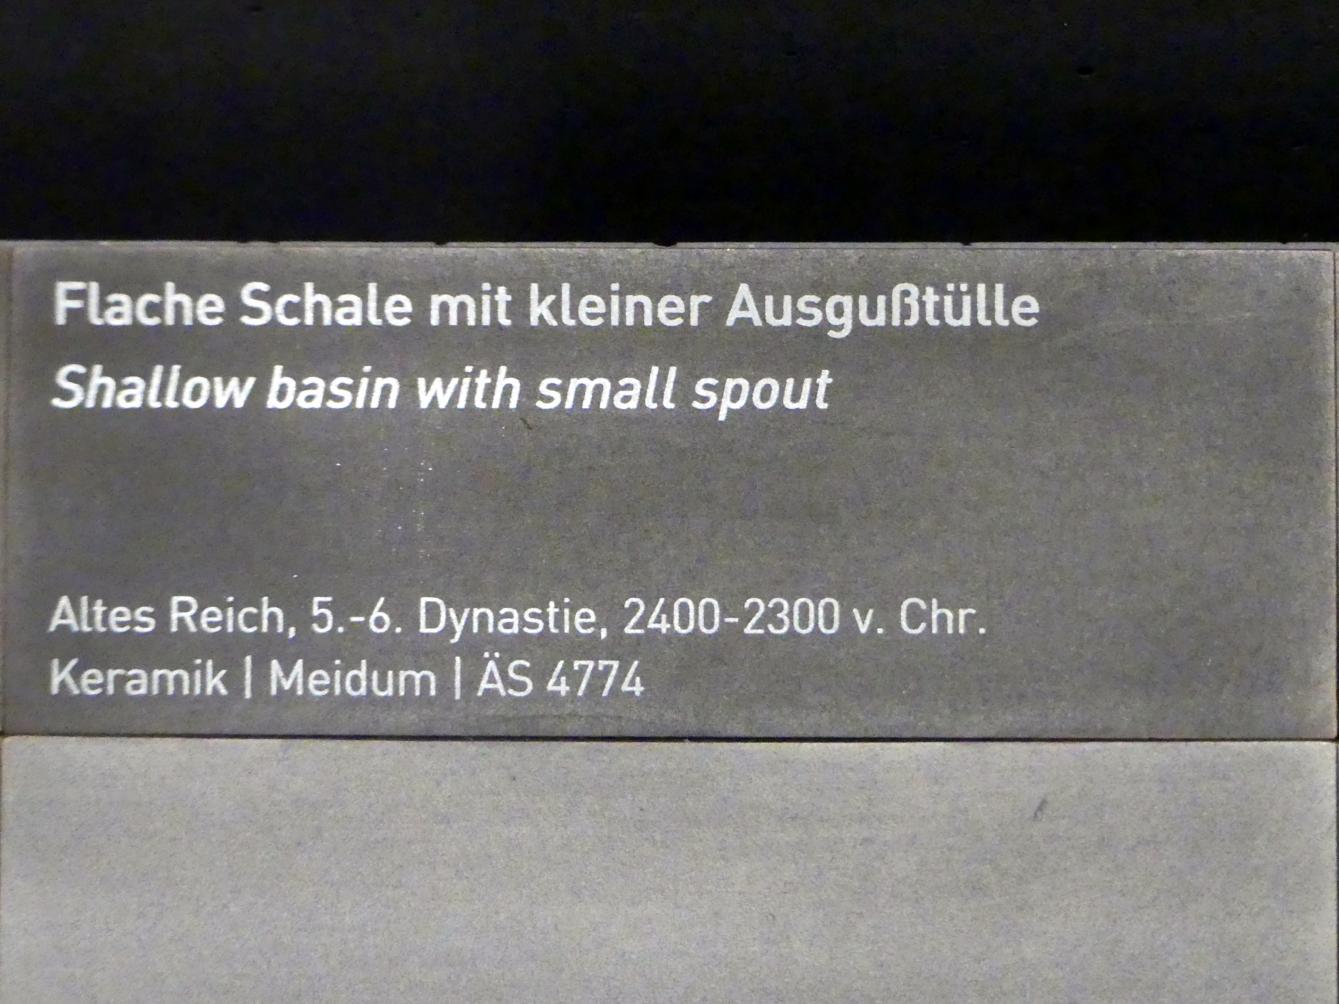 Flache Schale mit kleiner Ausgußtülle, 5. Dynastie, Undatiert, 6. Dynastie, Undatiert, 2400 - 2300 v. Chr., Bild 2/2